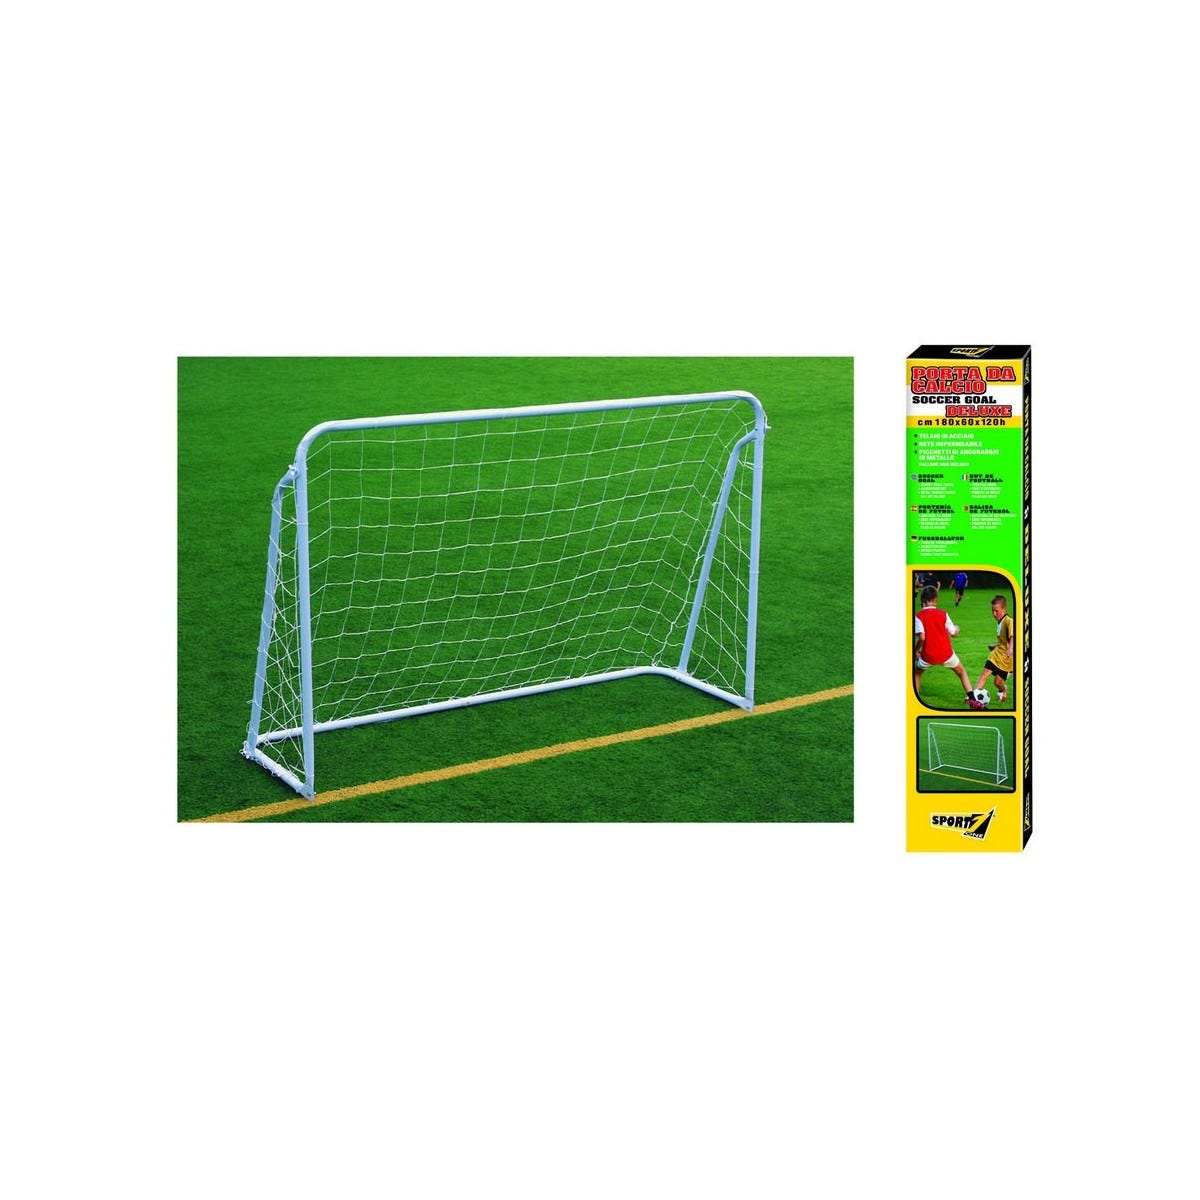 Porta Calcio Deluxe Metallo Rete Piccchetti 180x60x120 Soccer Goal